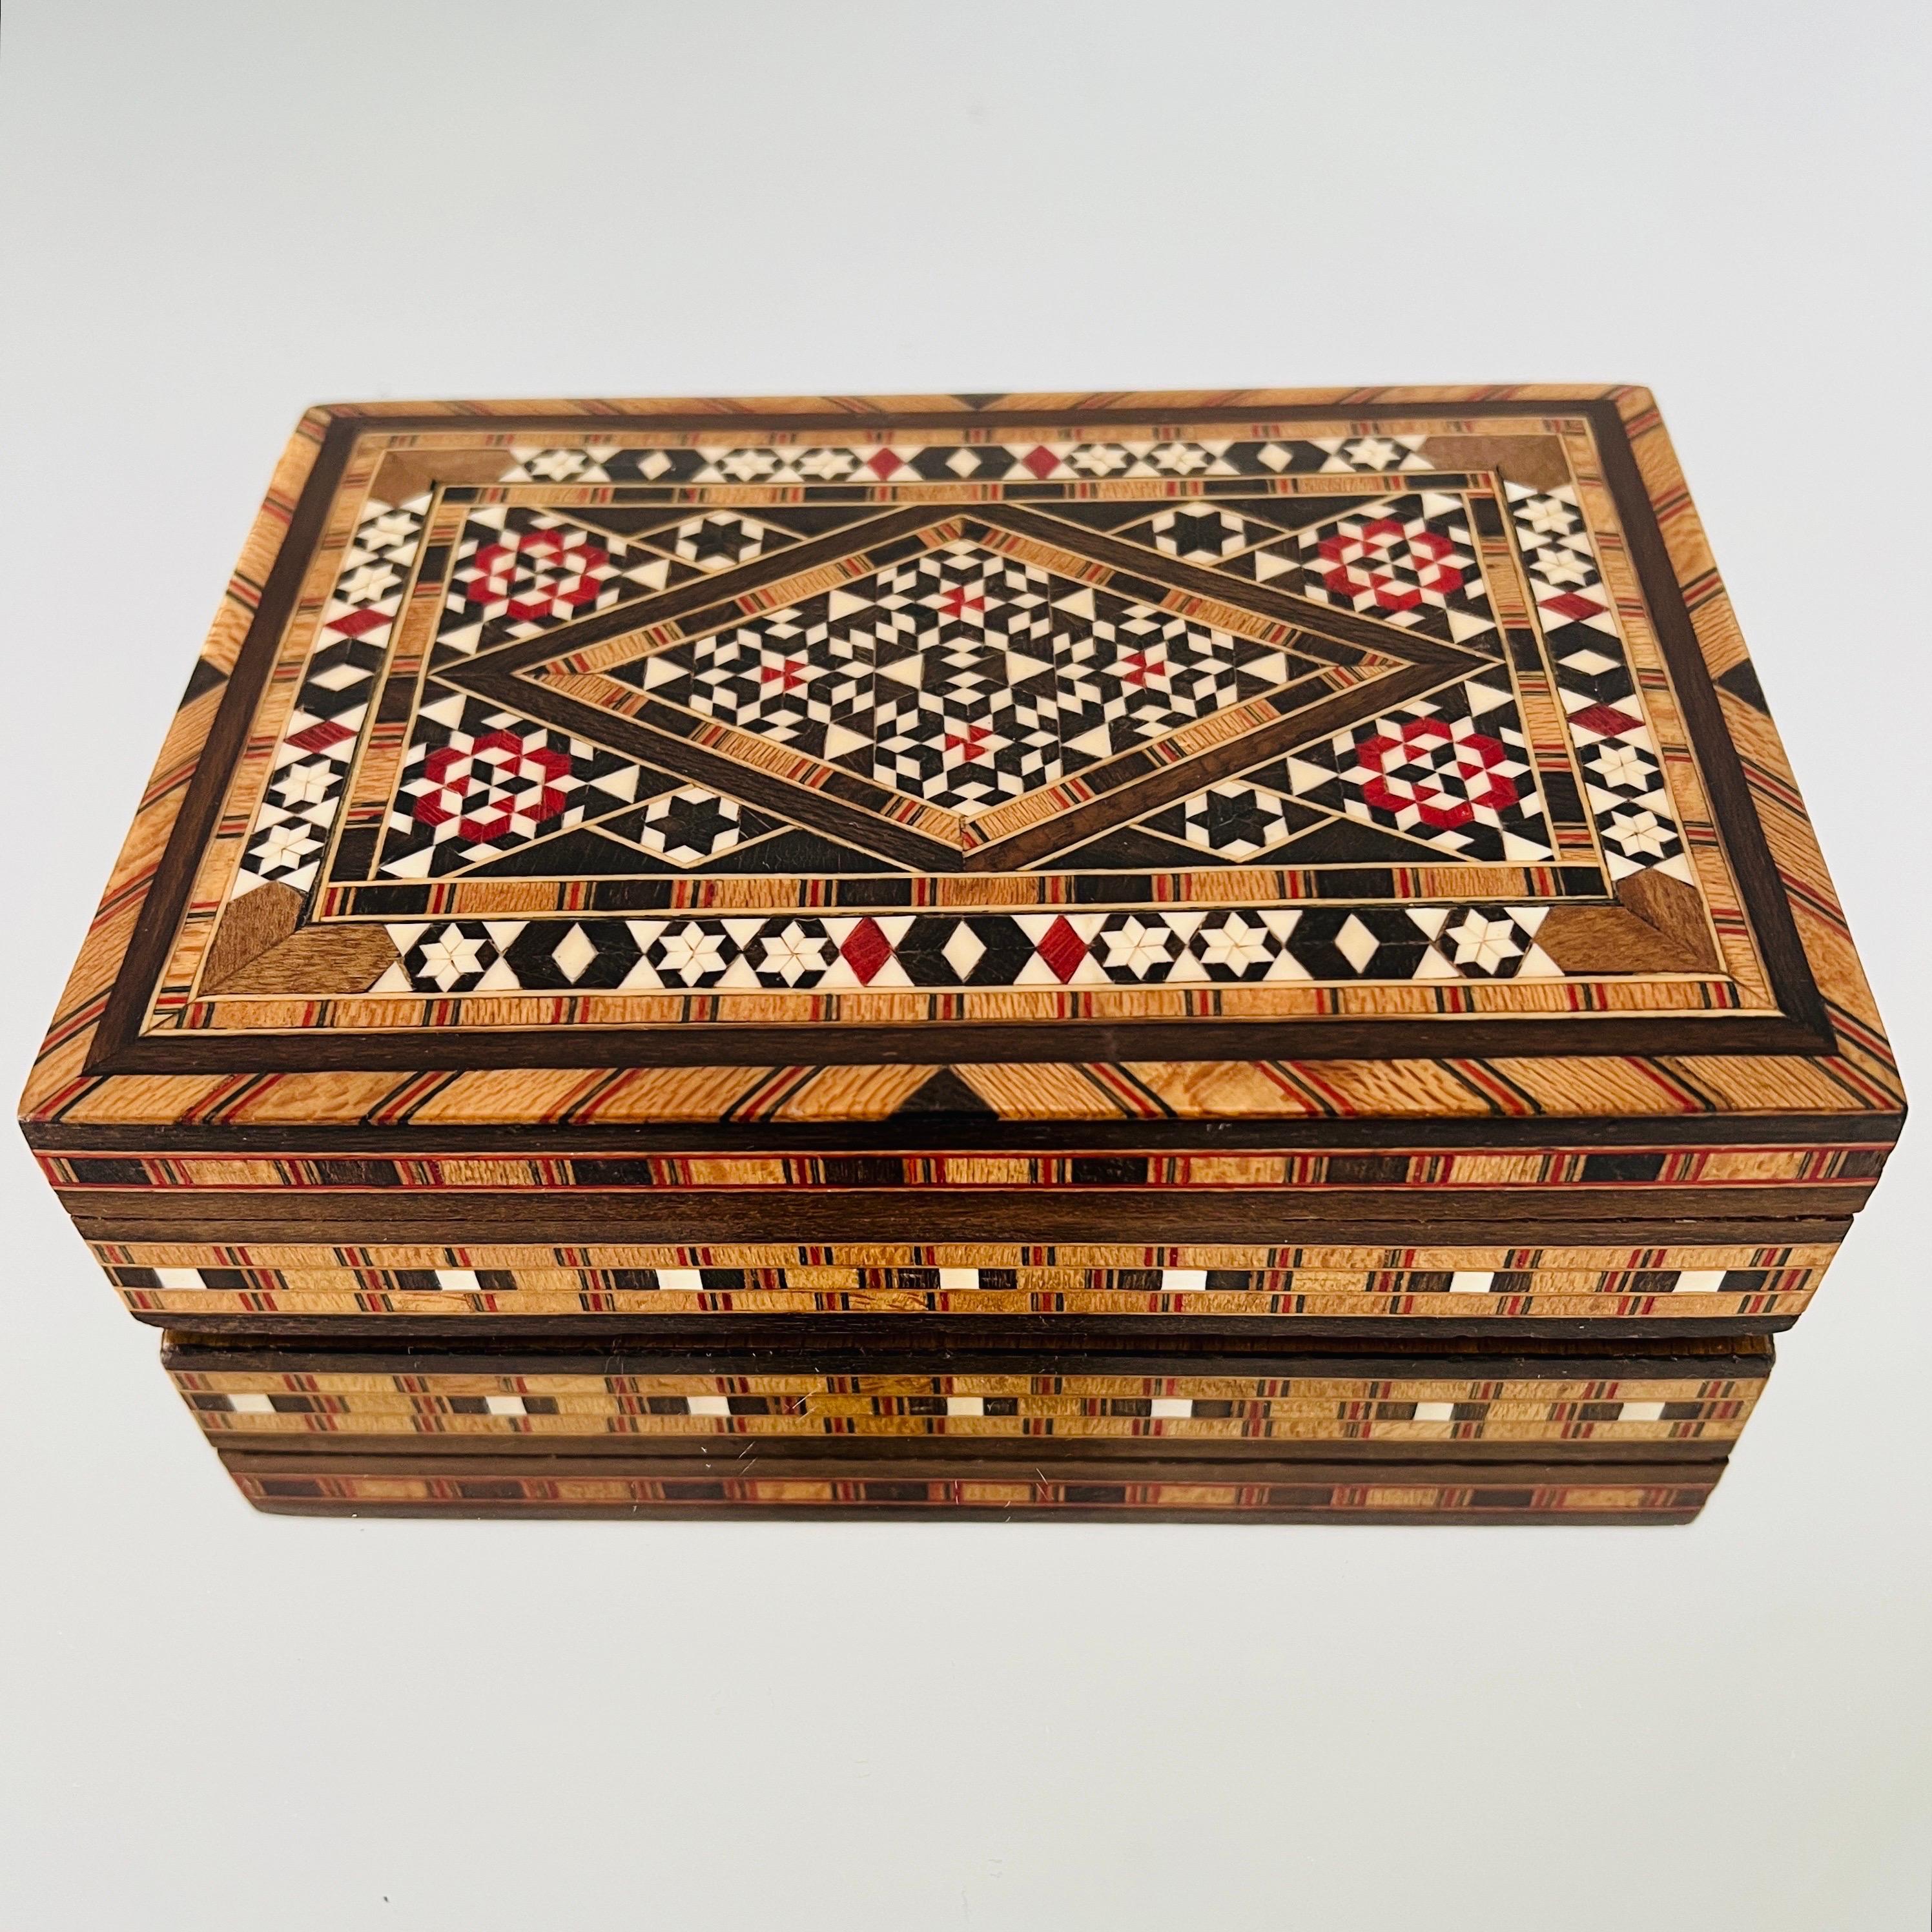 Exquise boîte en bois Khatam fabriquée à la main avec un motif de marqueterie en micro-mosaïque, une ancienne technique persane d'incrustation.  Cette boîte de style mauresque présente des incrustations géométriques de bois et d'os. Fabrication